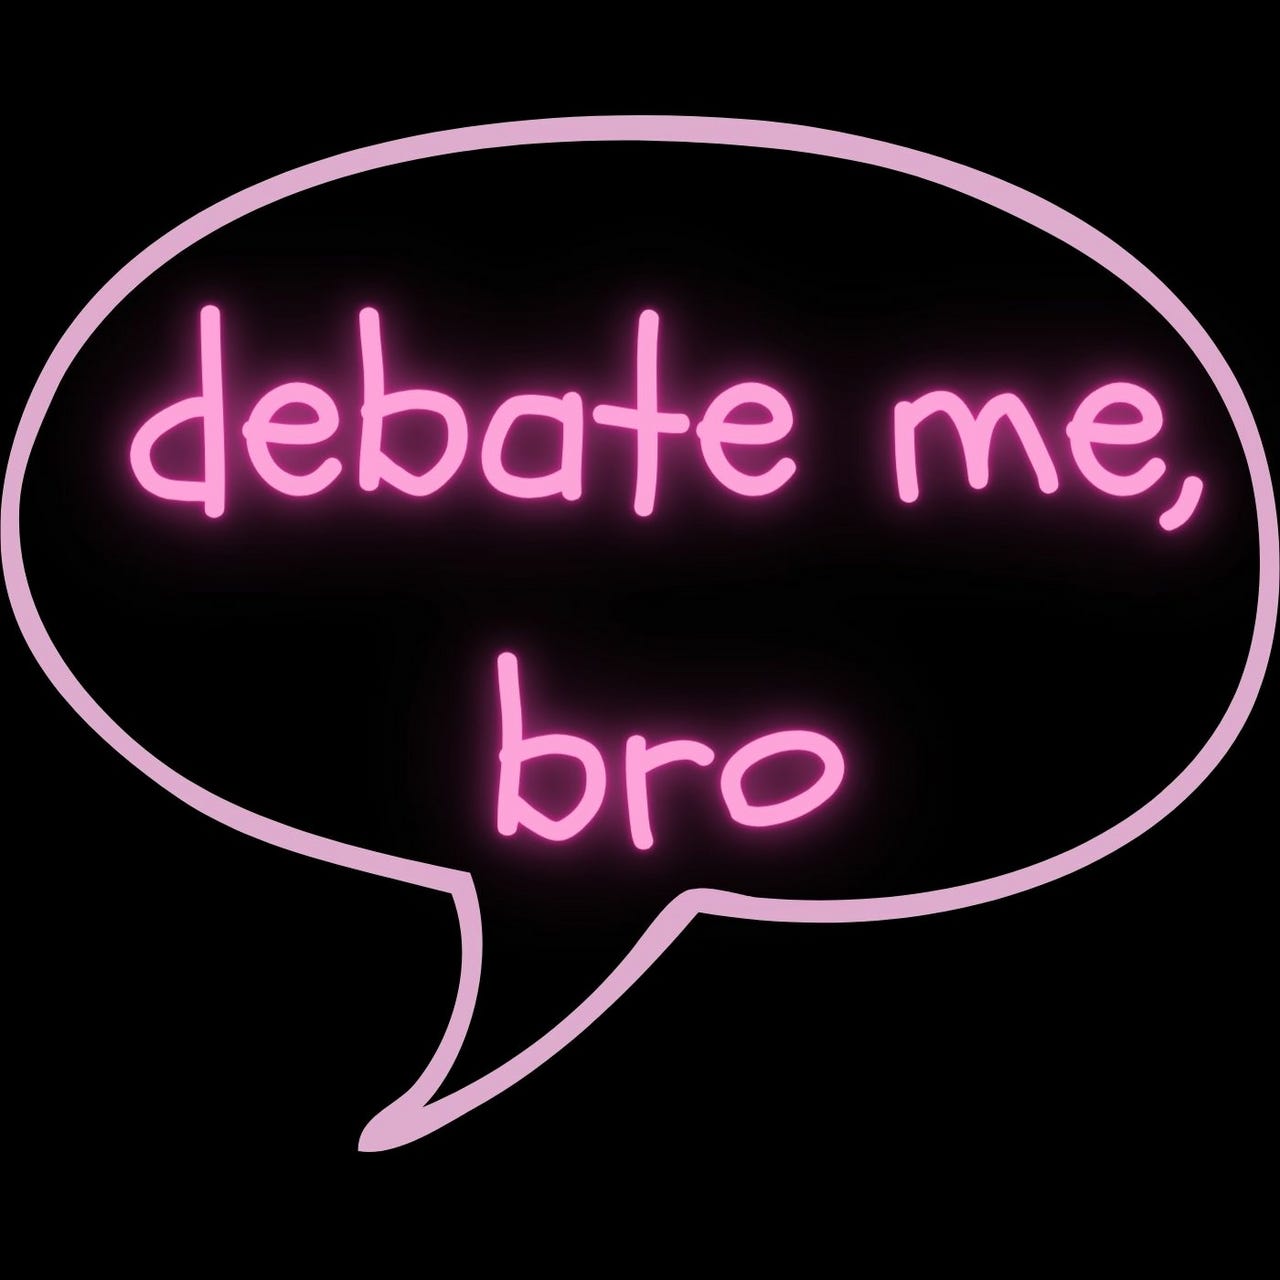 Artwork for debate me, bro